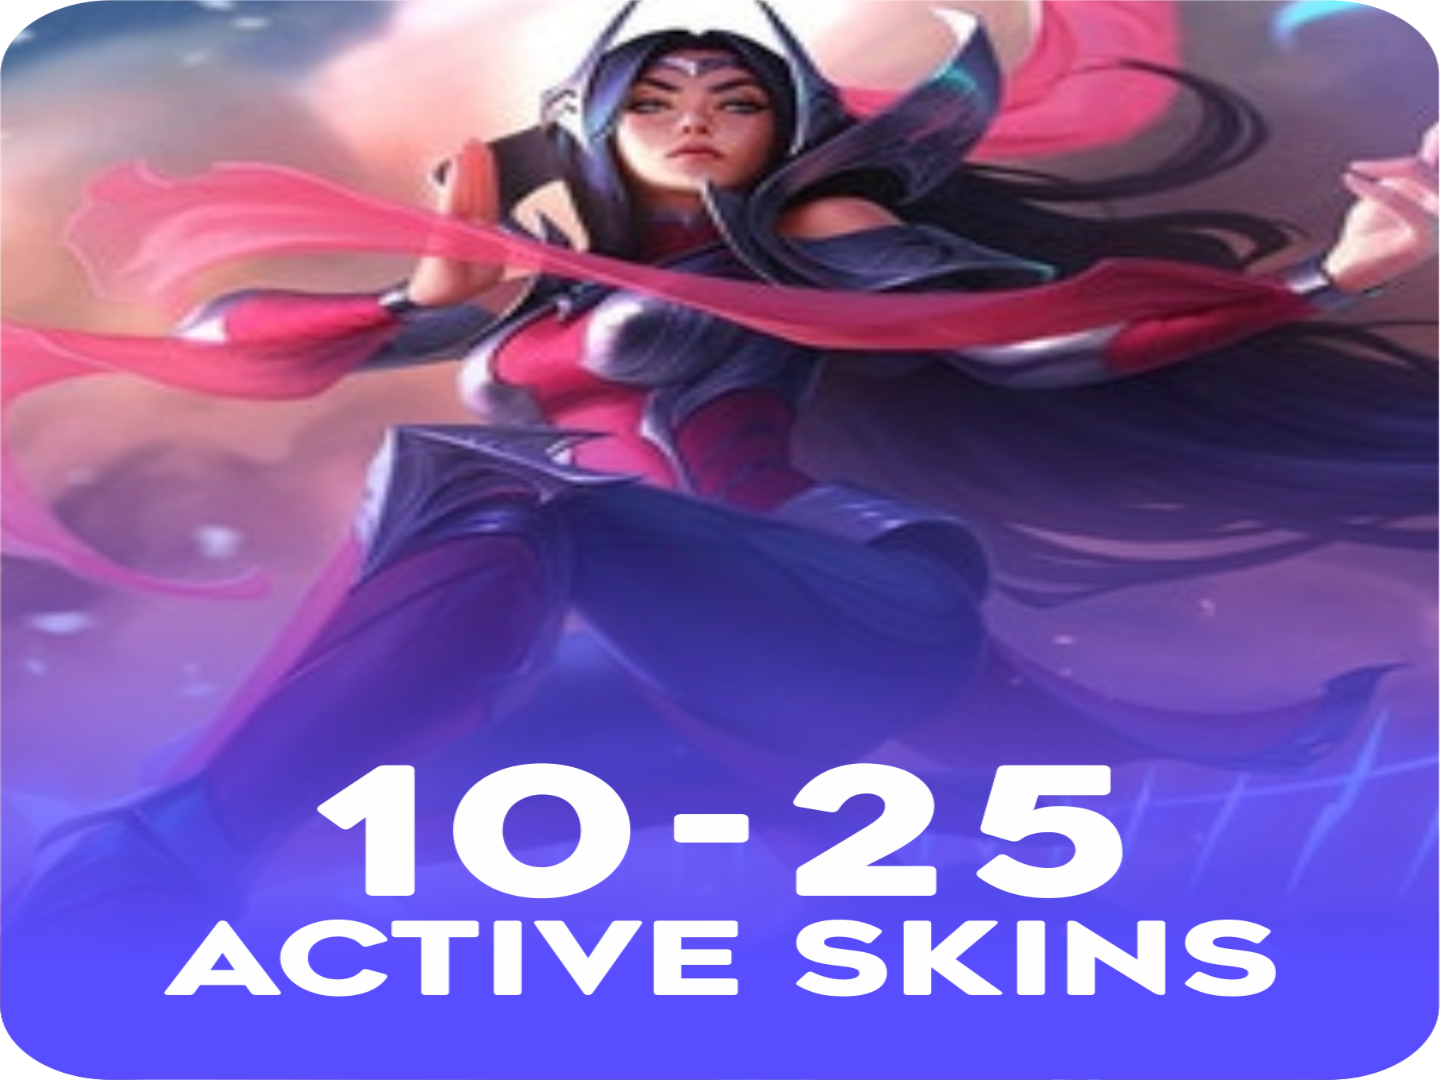 Active 10-25 skins  Account